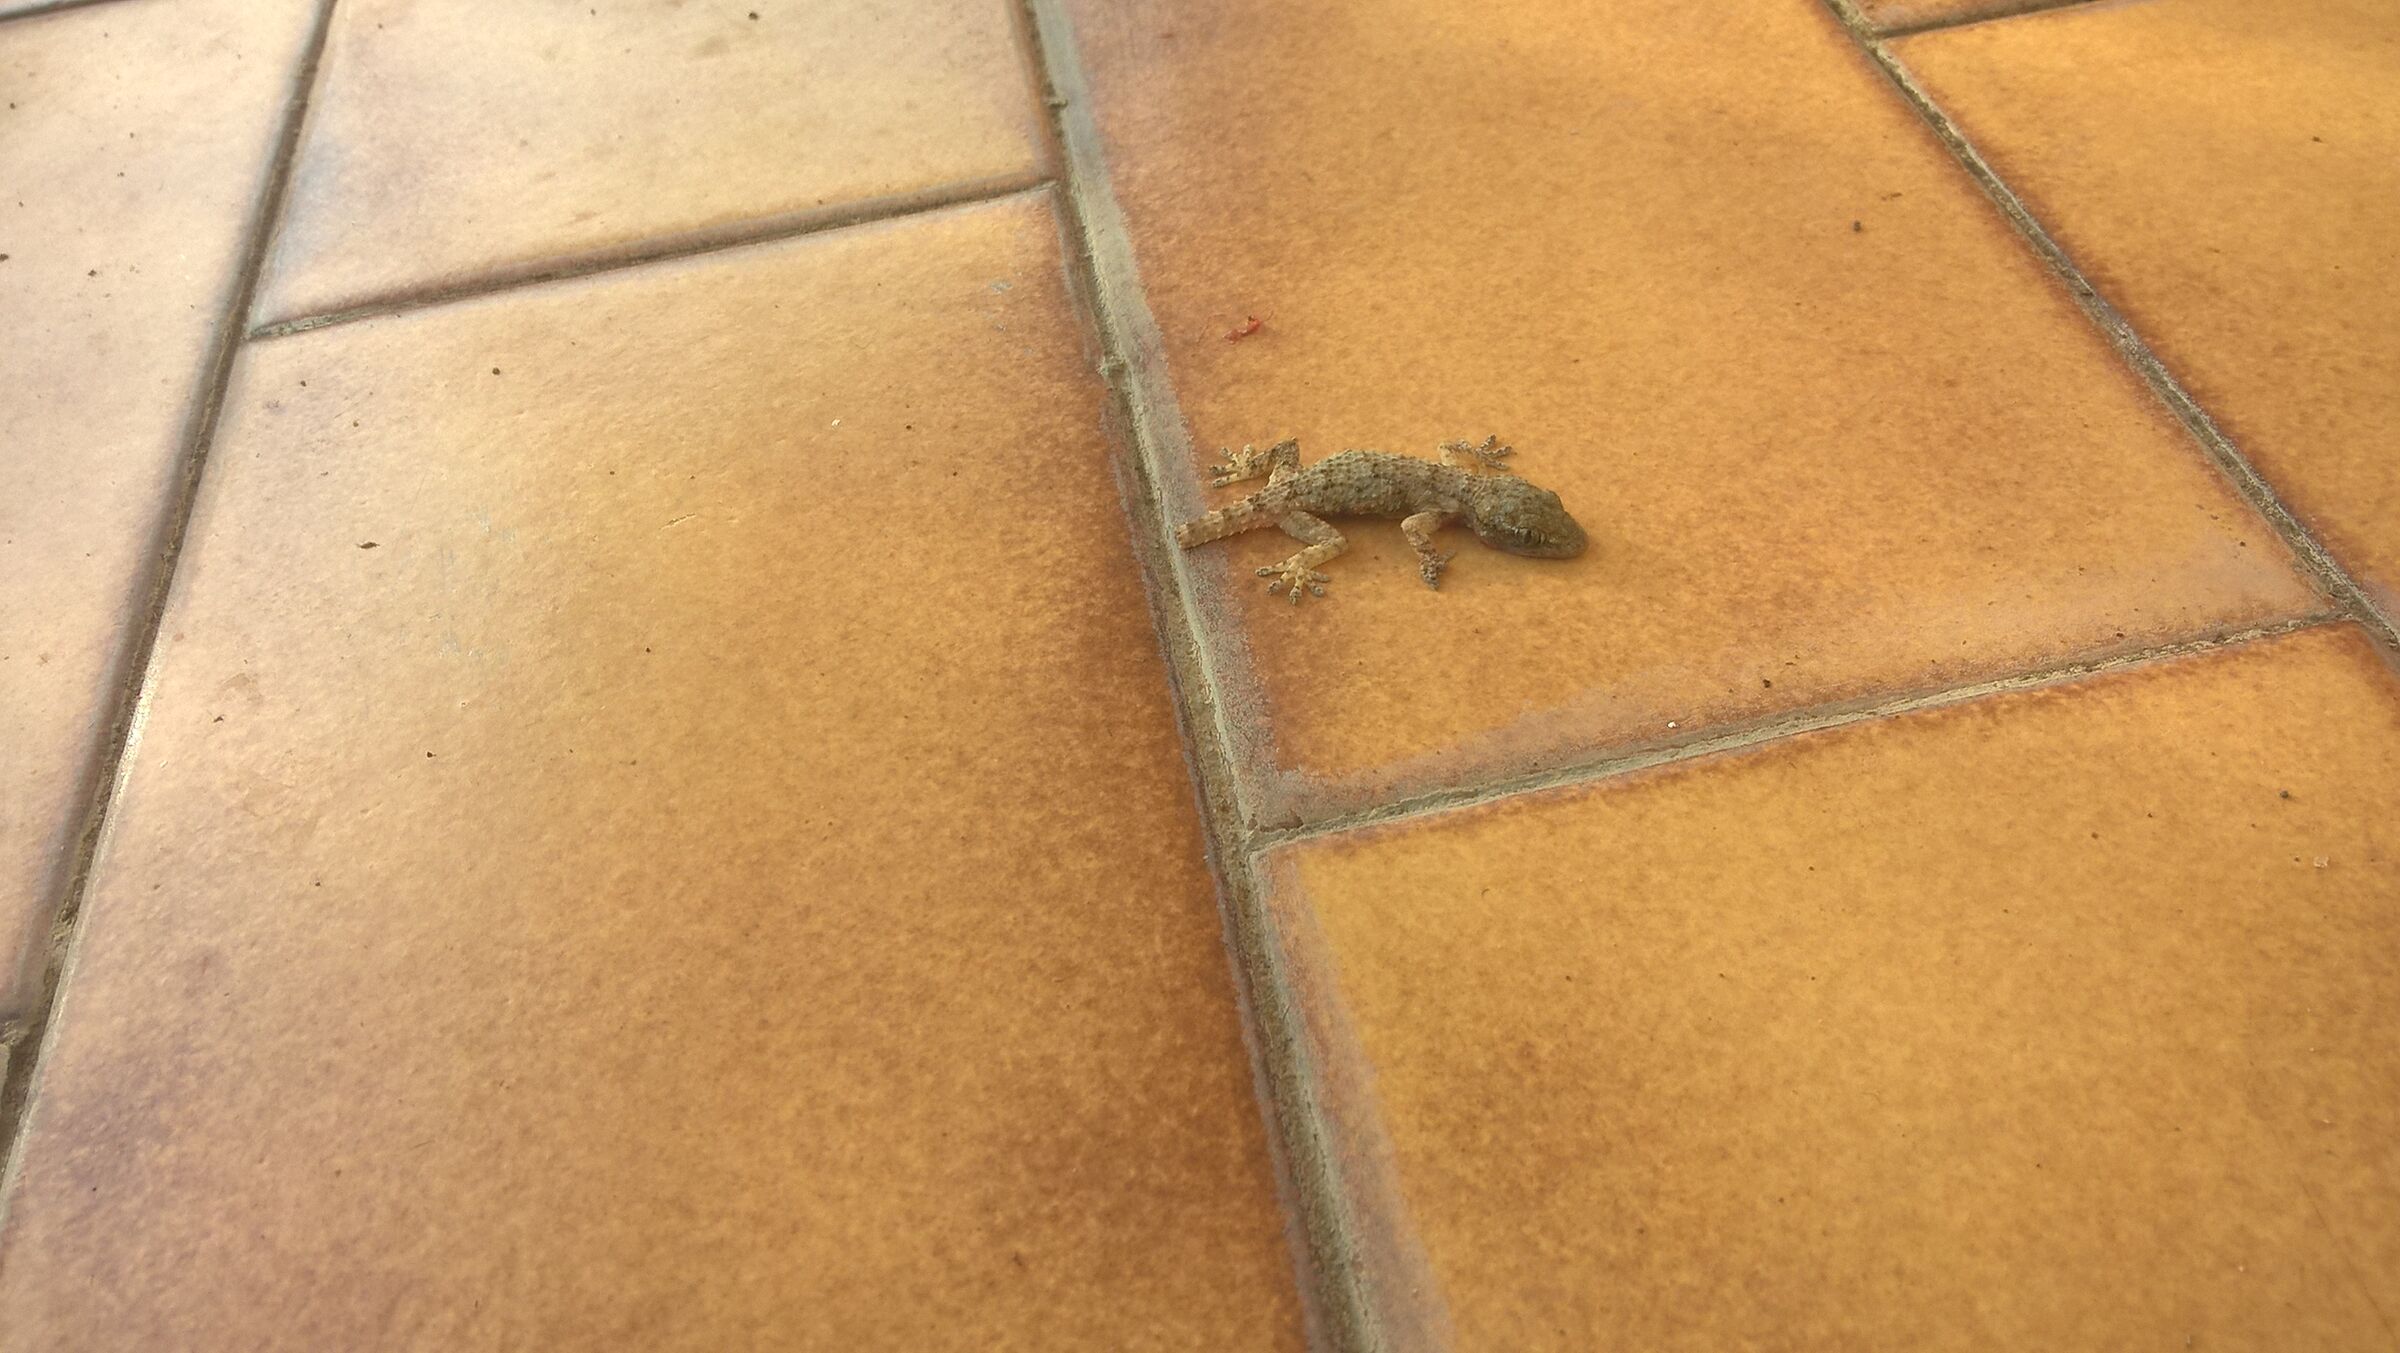 Gecko (actually more dead than alive)...